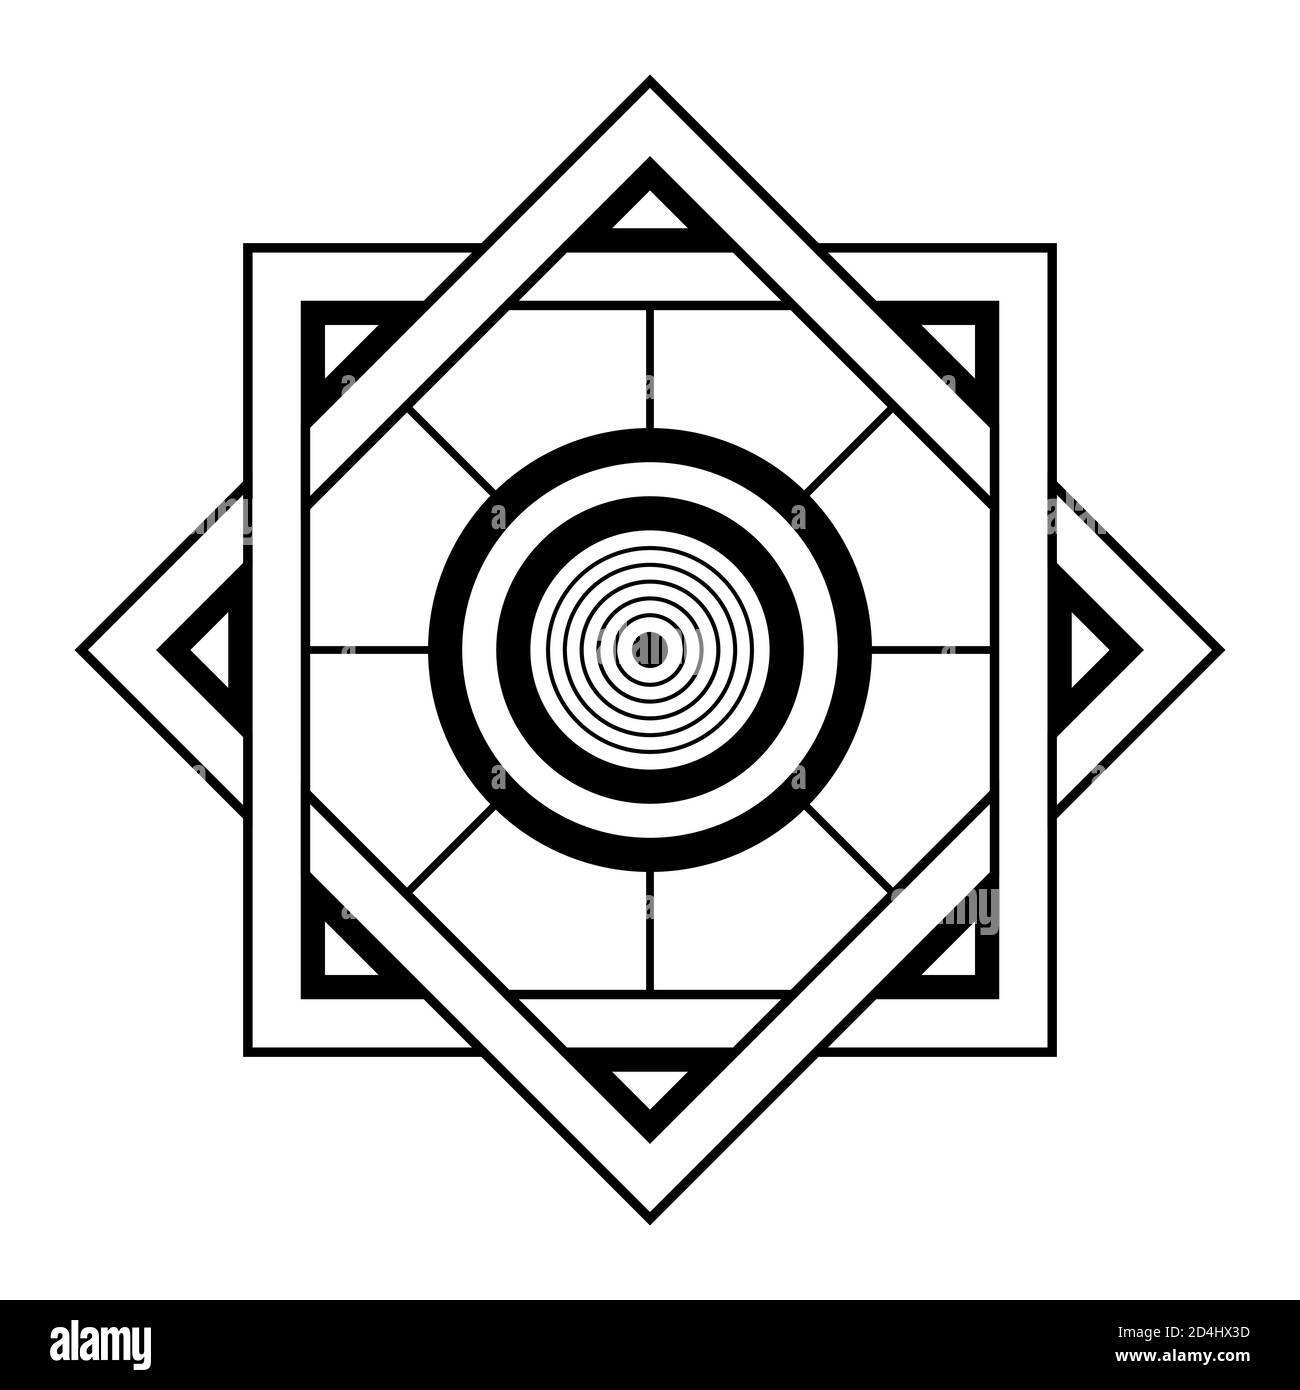 Simbolo geometrico astratto. Segno geometrico sacro con forme geometriche. Isolato su sfondo bianco. Forme lineari nere. Mstic mandala. Illustrazione Vettoriale